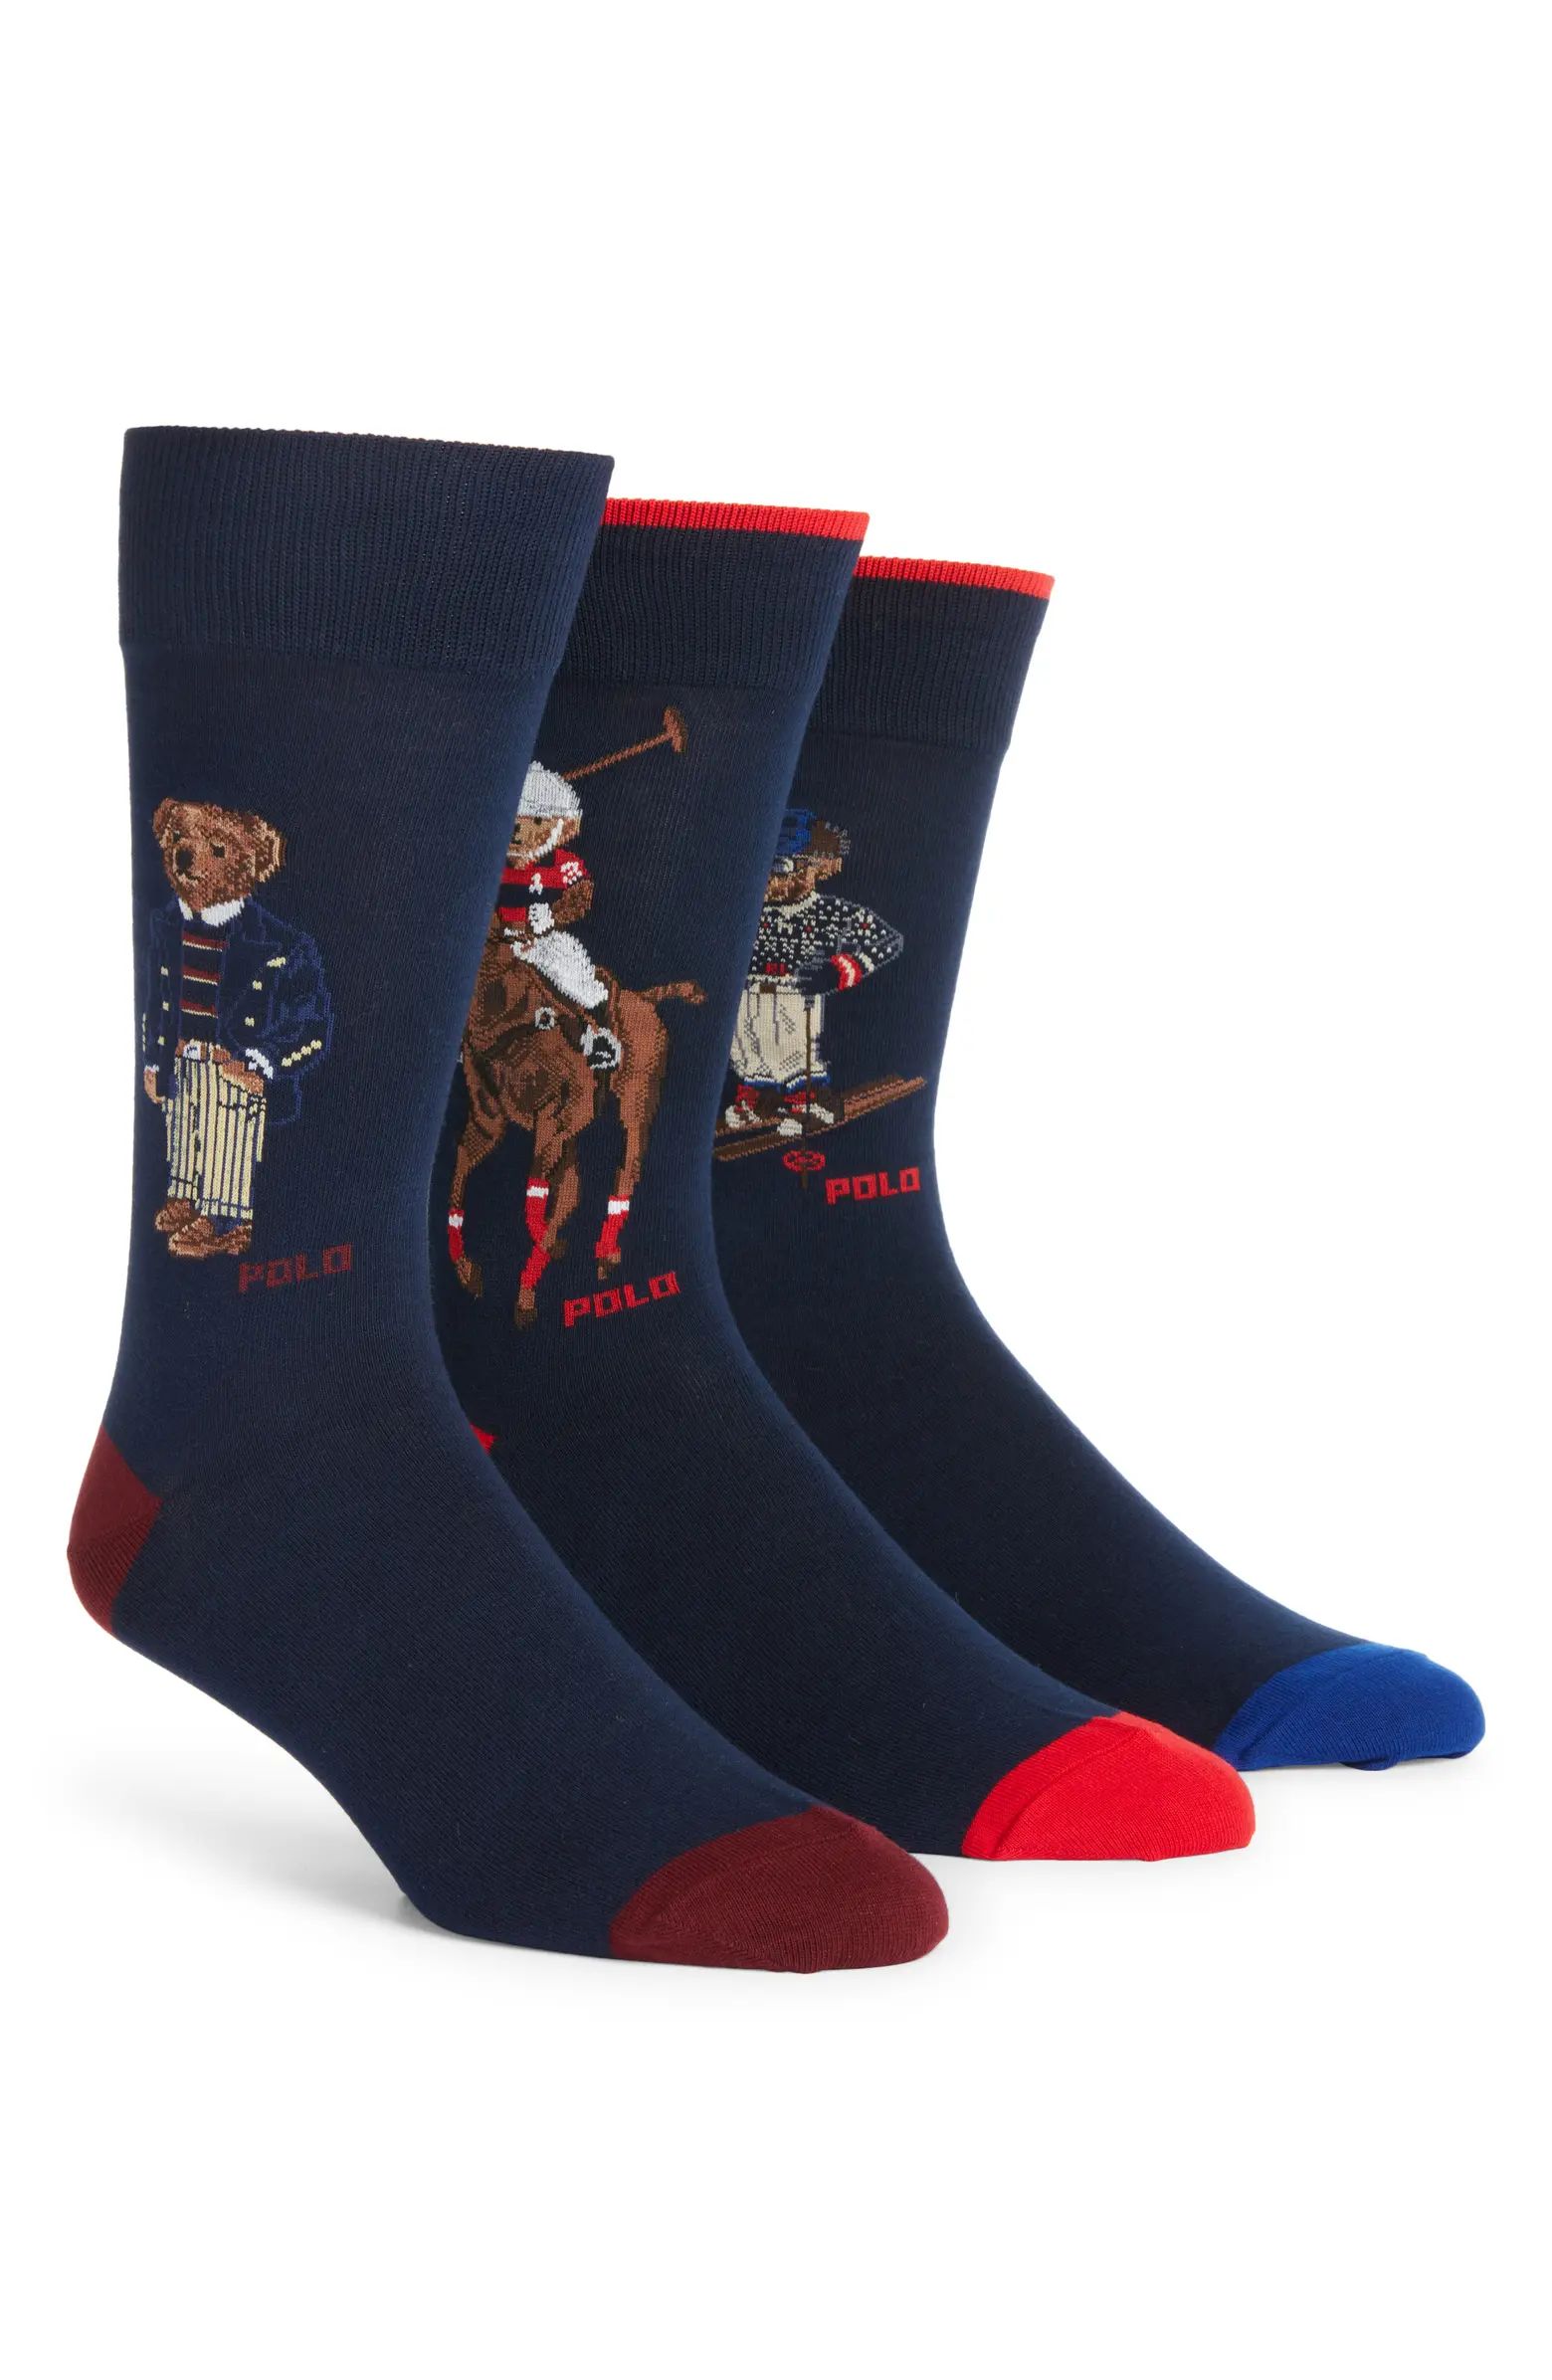 Polo Ralph Lauren Assorted 3-Pack Polo Bear Dress Socks Gift Box | Nordstrom | Nordstrom